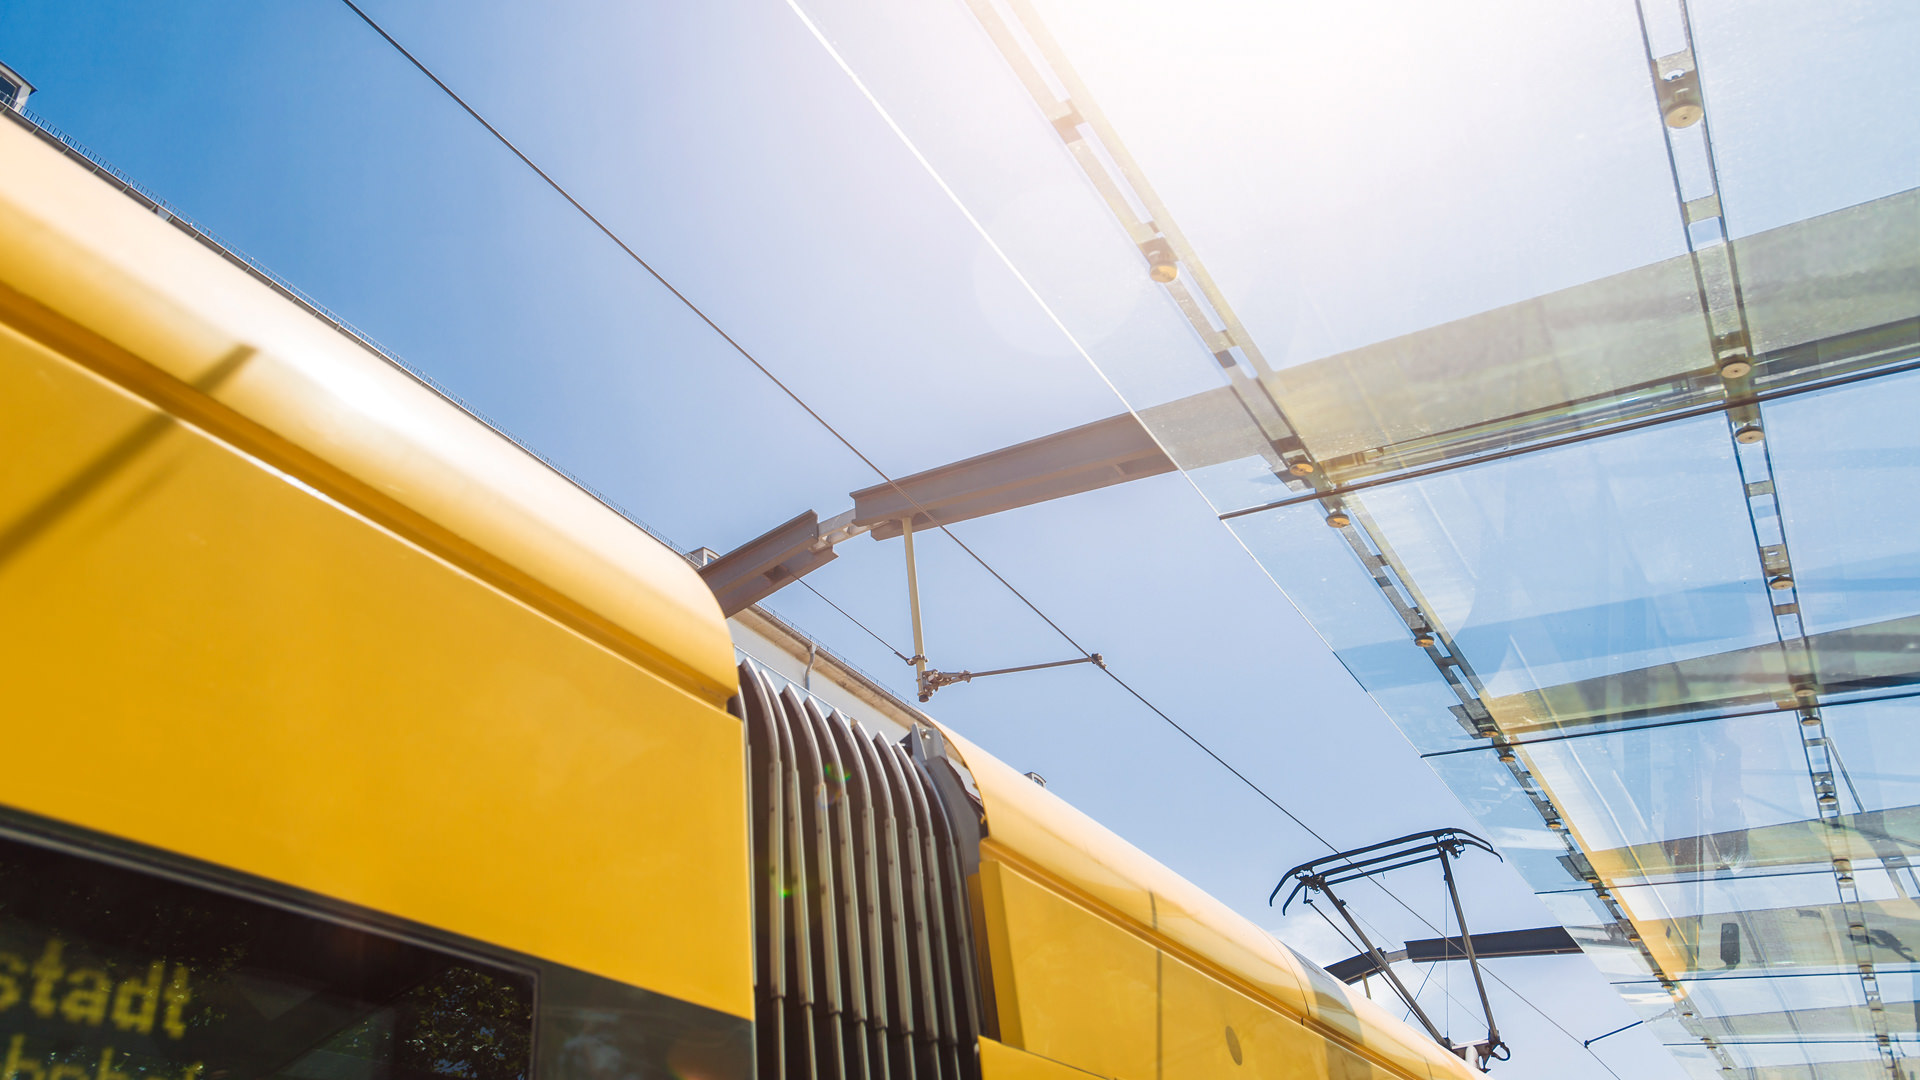 Blick durch die gläserne Bedachung einer Haltestelle Richtung Sonne, links ist im Anschnitt eine gelbe Straßenbahn zu sehen